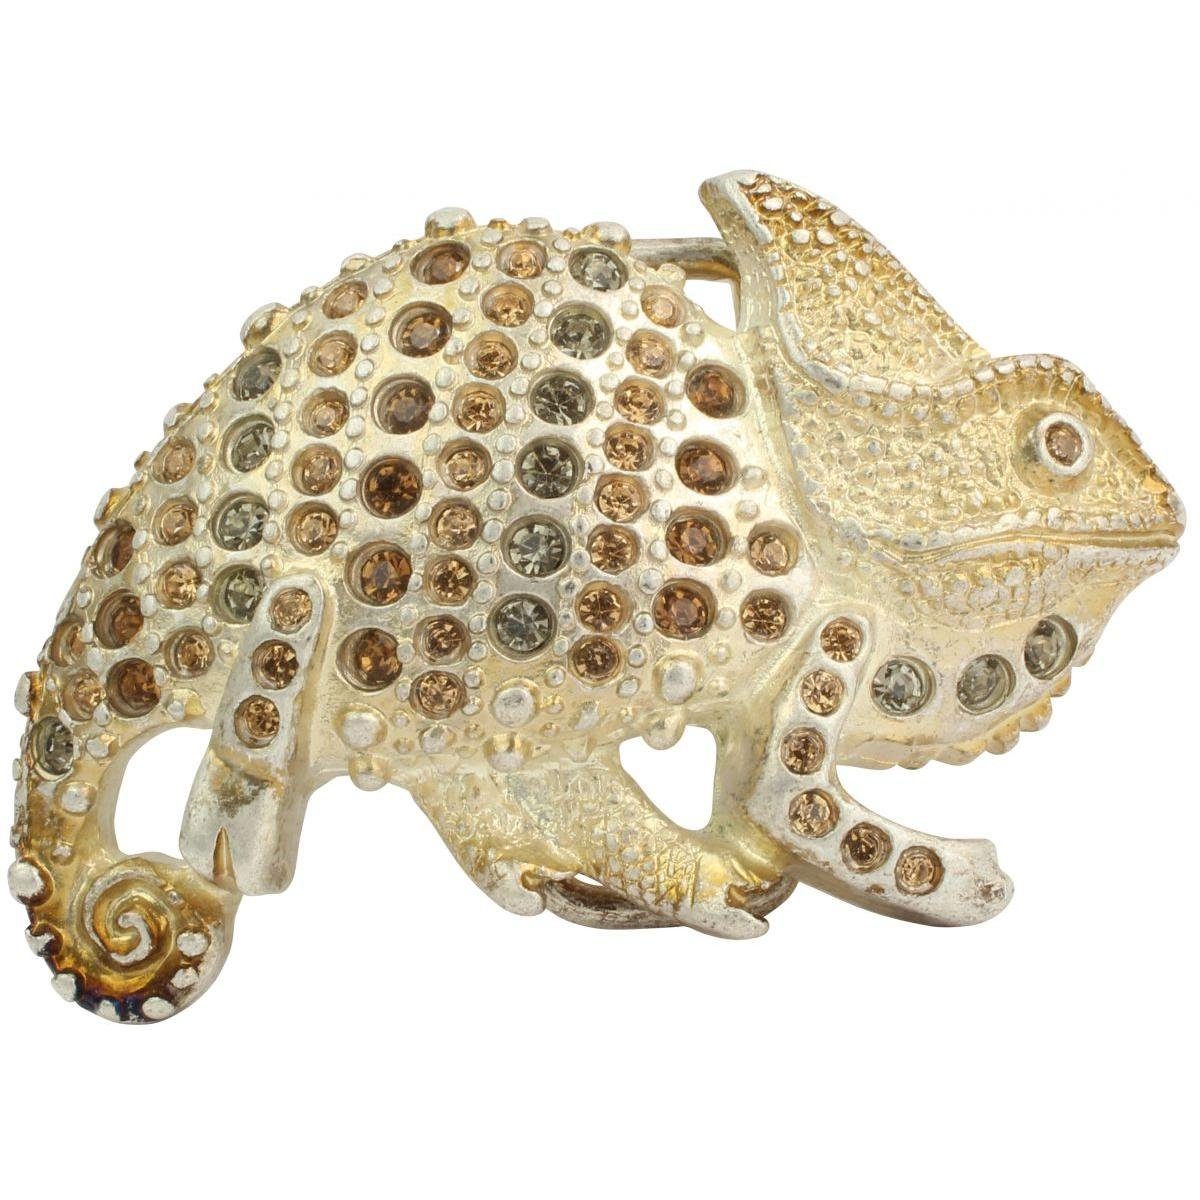 BELTINGER Gürtelschnalle Chameleon 4,0 cm - Buckle Gürtelschließe 40mm - Mit hochwertigem Stras Oro vecchio, mit Steinen | Gürtelschnallen